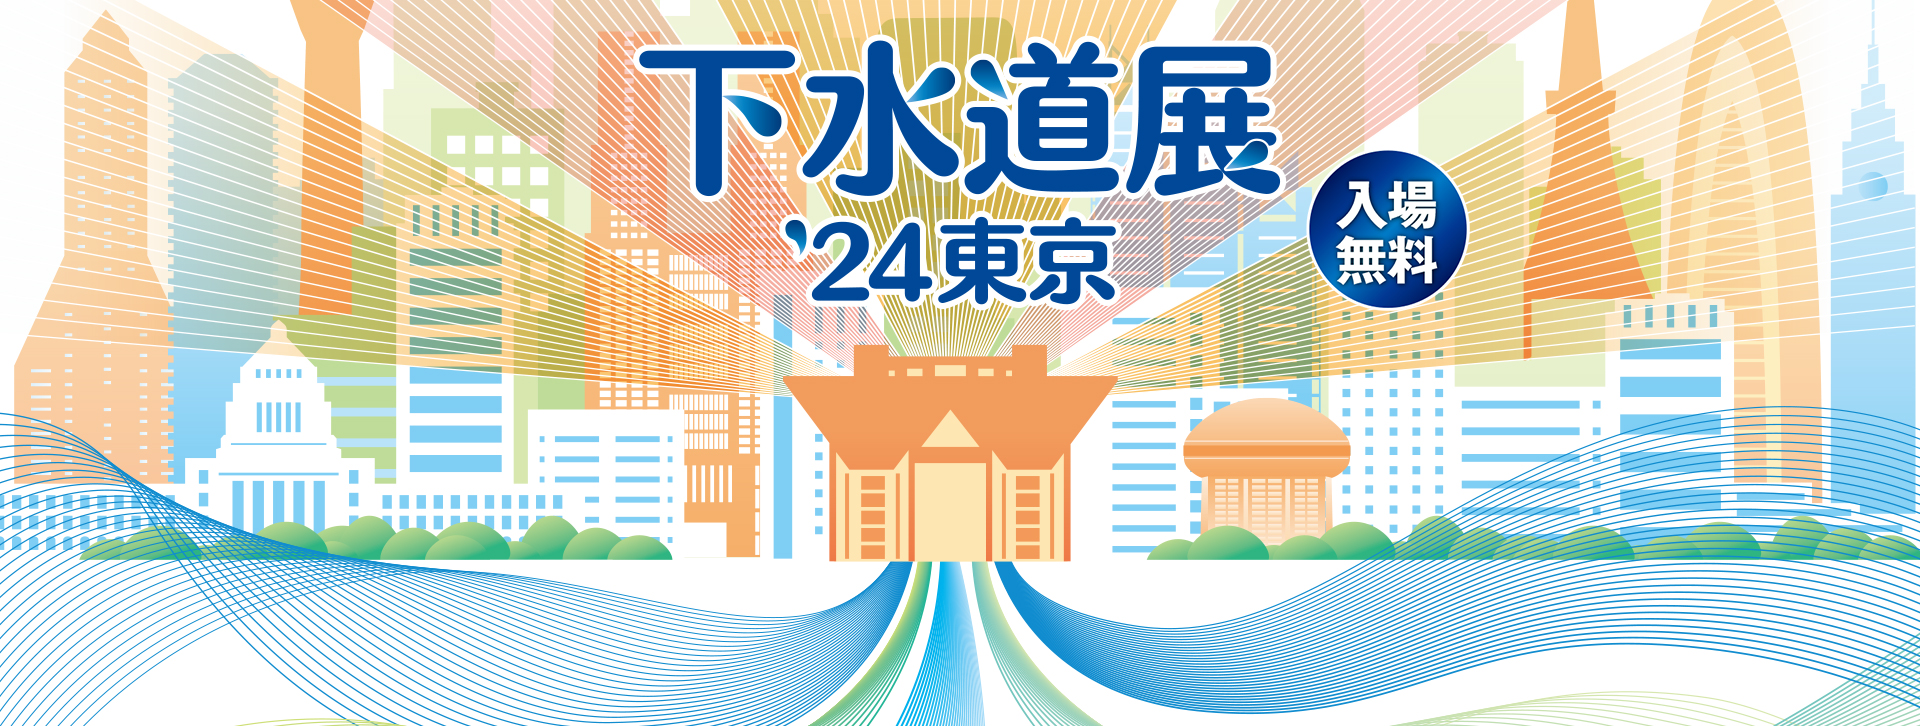 下水道展’24東京